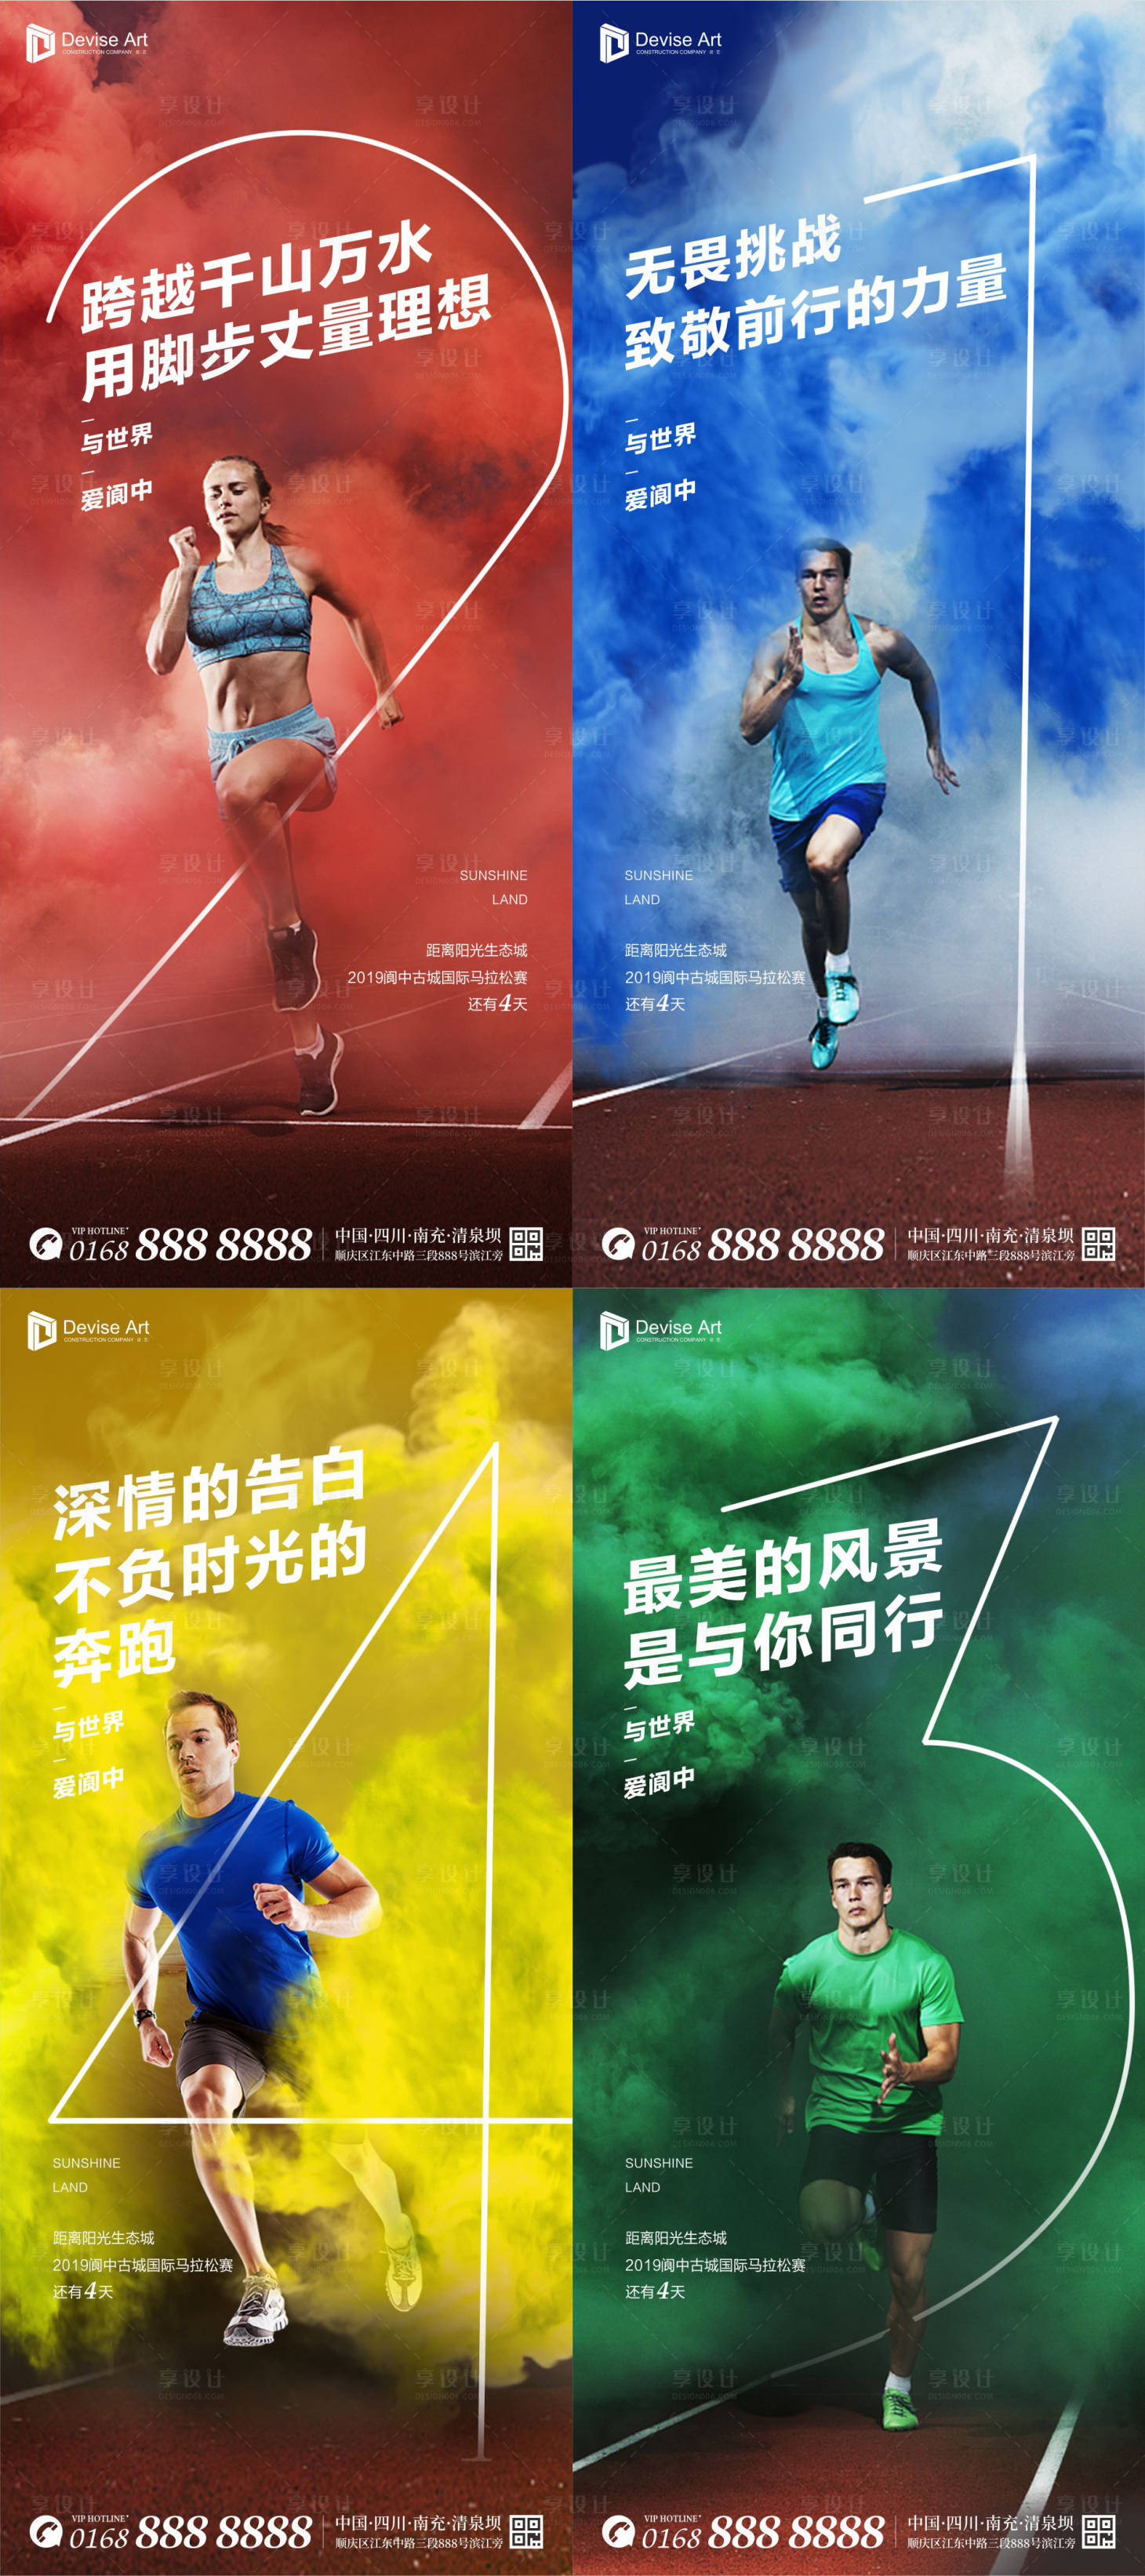 海报 倒计时 数字 跑步 健身 马拉松 赛跑 赛道 运动 创意 缤纷 烟雾